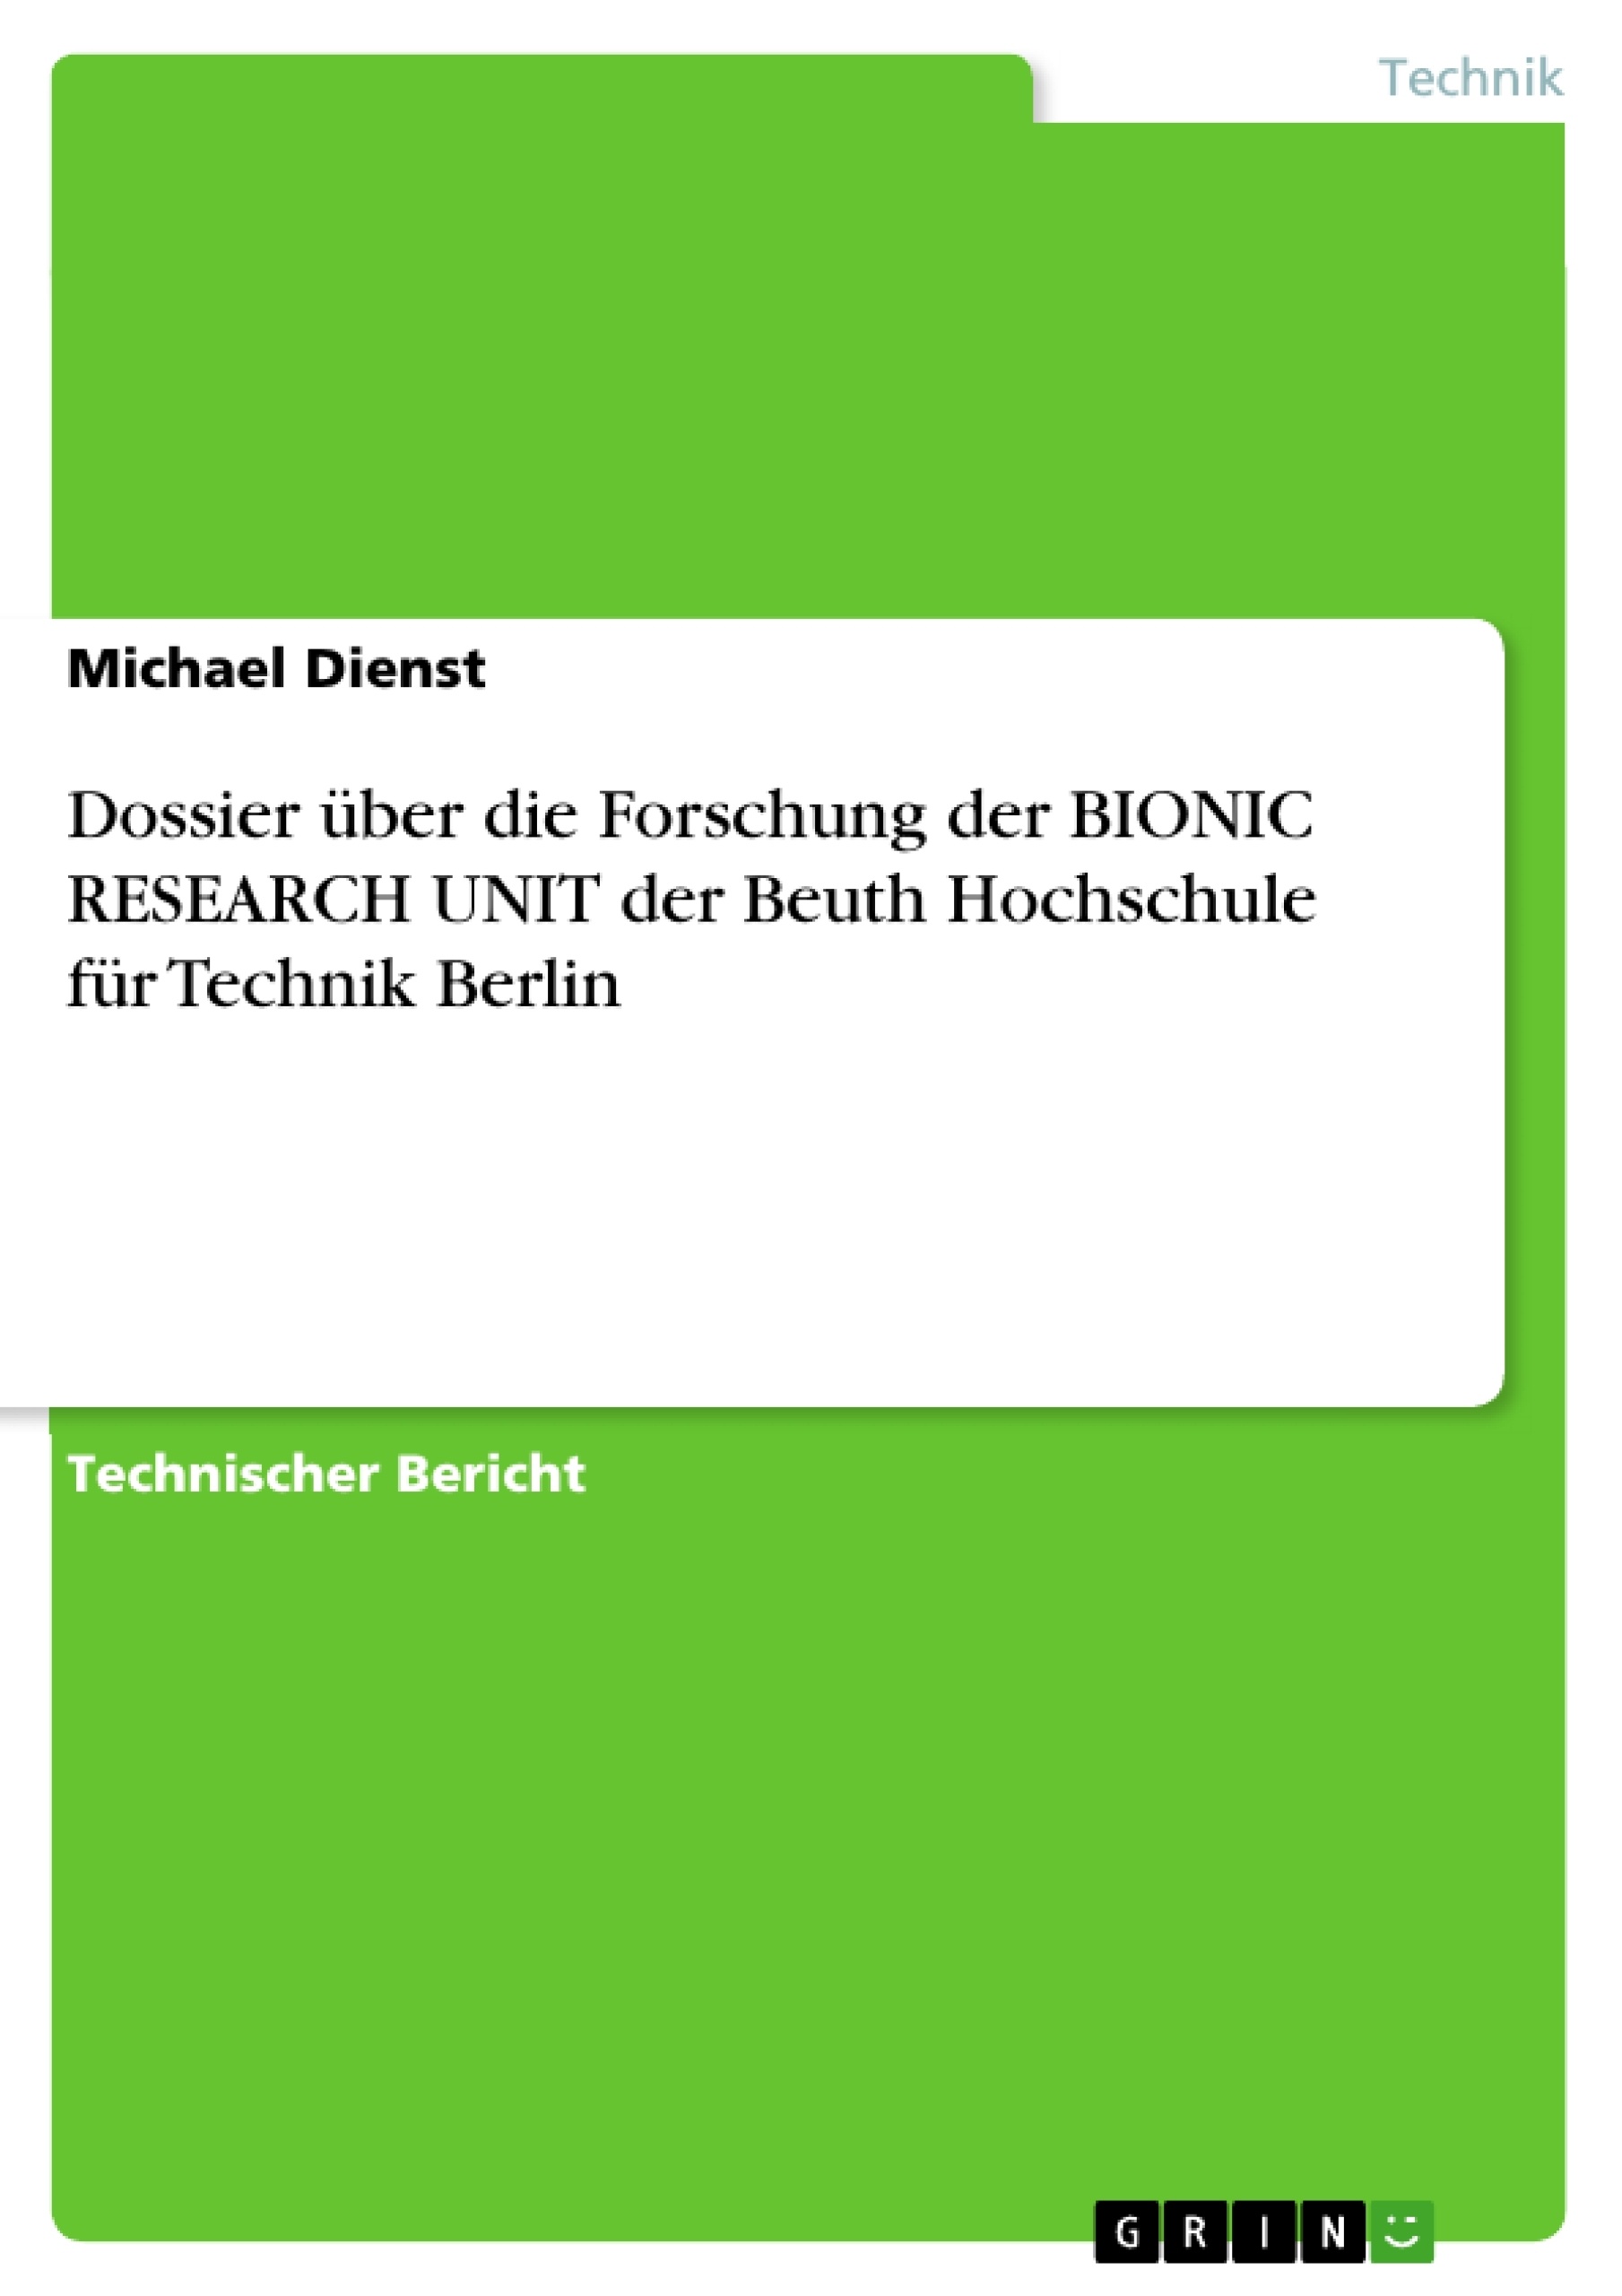 Title: Dossier über die Forschung der BIONIC RESEARCH UNIT der Beuth Hochschule für Technik Berlin